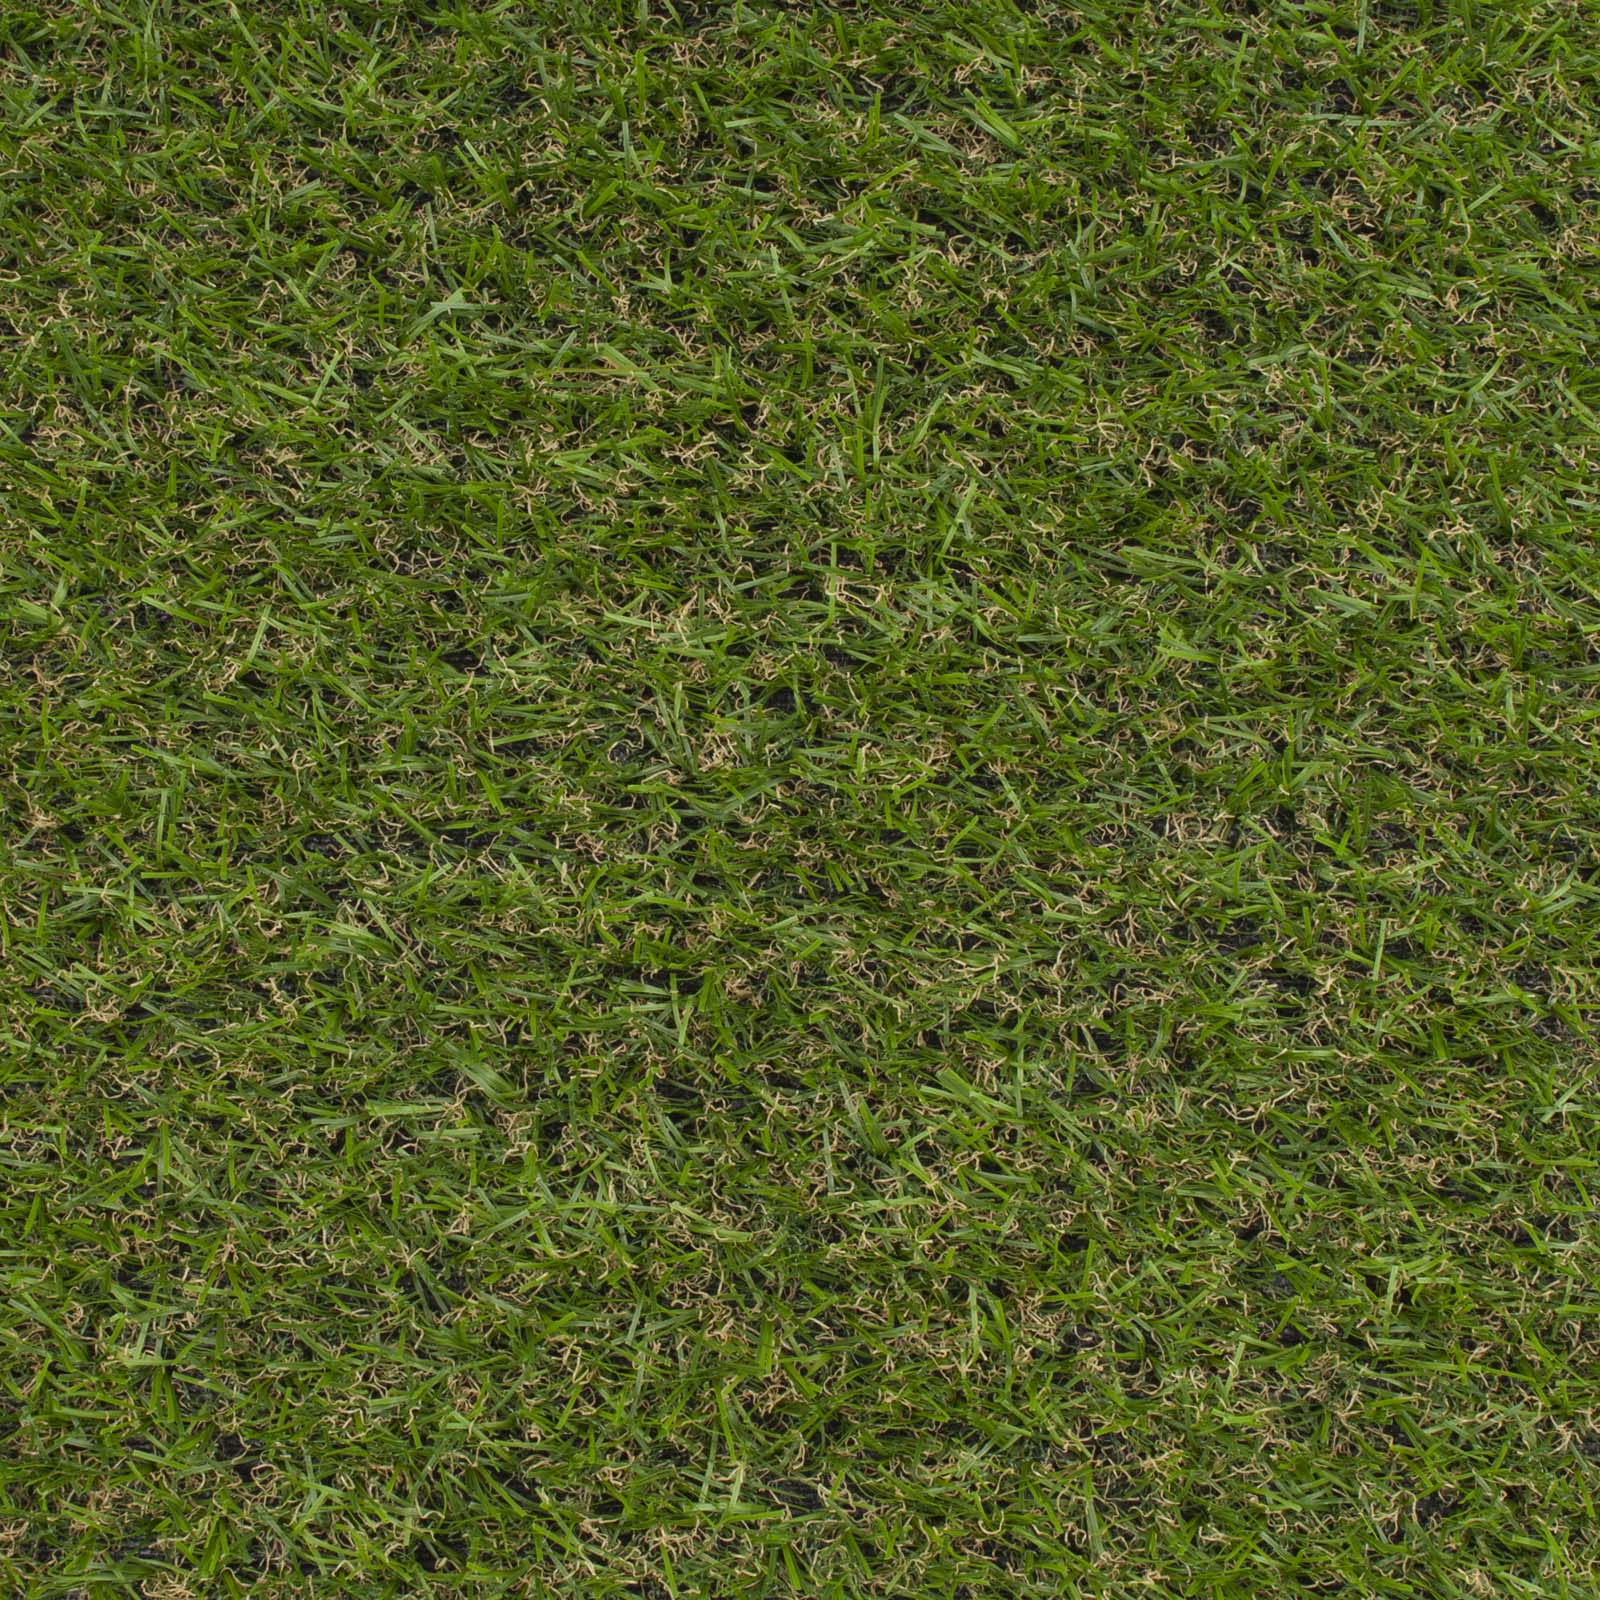 Longleat Artificial Grass - Far